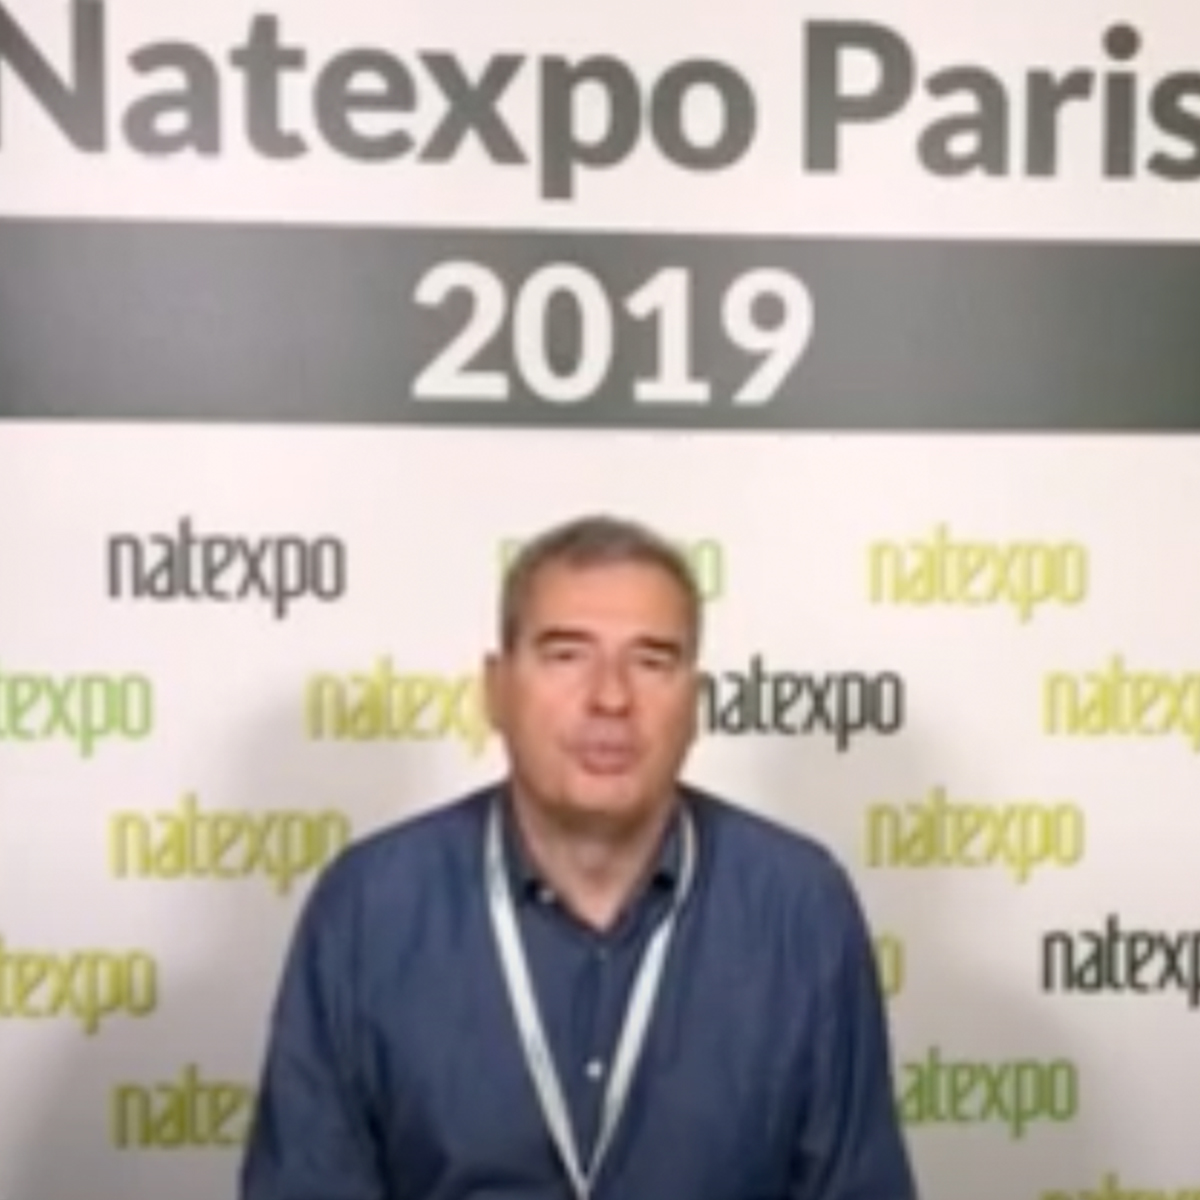 natexpo-paris-2019